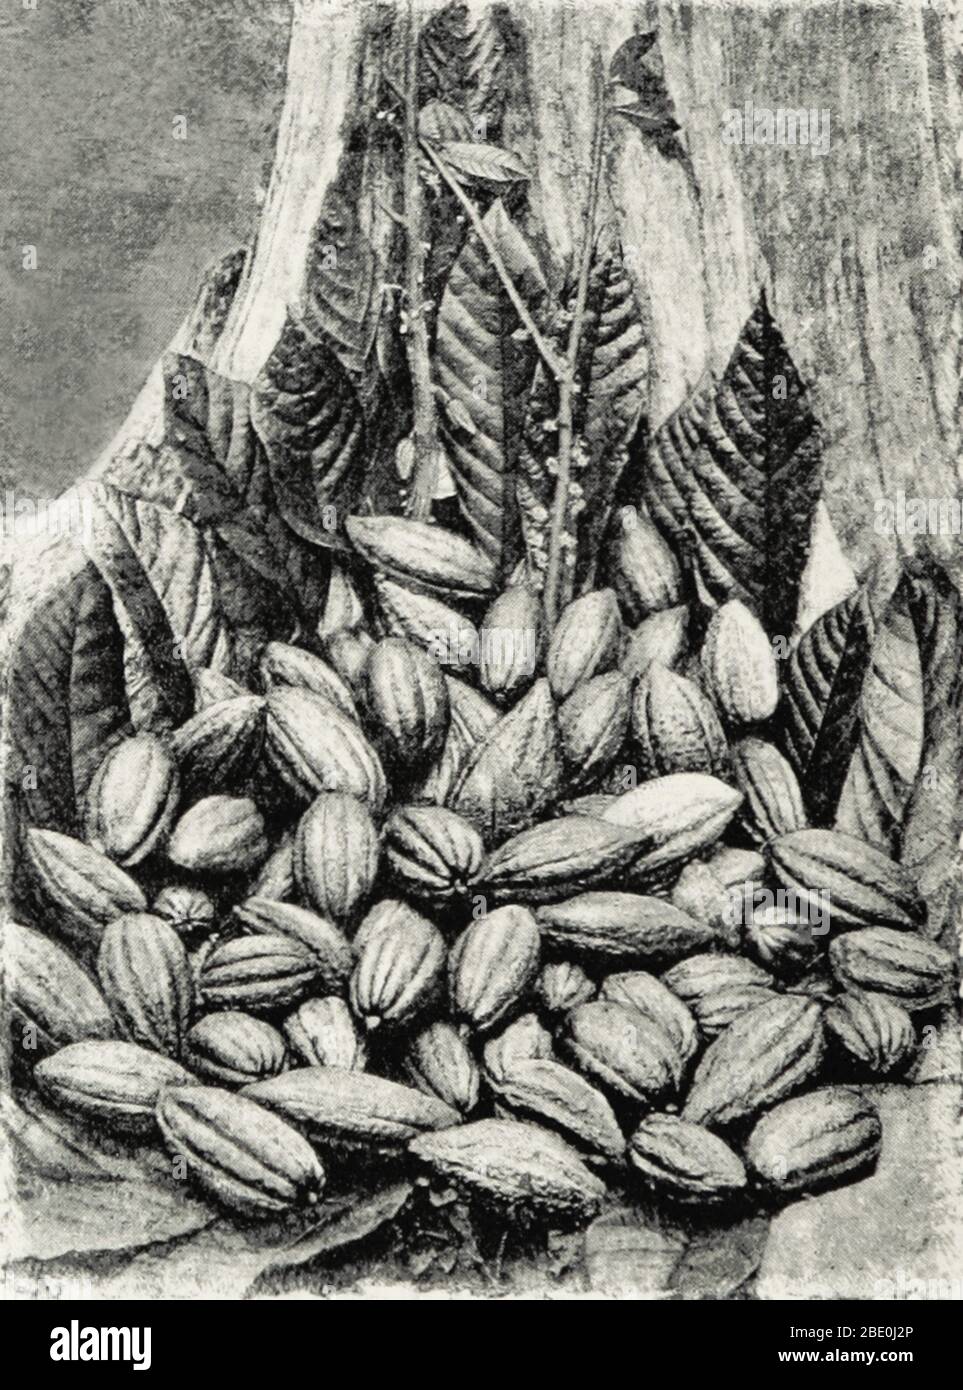 Kakaoschoten vom Kakaobaum (Theobroma cacao) in Ceylon, 1893. Bis Columbus Anfang des 15. Jahrhunderts Kakaobohnen nach Spanien brachte, war Europa mit dem beliebten Kakaogetränk aus Mittel- und Südamerika nicht vertraut. Nach der spanischen Eroberung der Azteken begann Schokolade nach Europa importiert zu werden und wurde schnell zu einem Favoriten am Hof. Kakaoplantagen in den Kolonien verbreiteten sich, wurden von Sklavenarbeit betrieben, während das Trinken von Kakao als exotisch, modisch, medizinisch und gefährlich galt. Die Schokoladenherstellung entwickelte sich im Laufe der Jahrhunderte, bis in modernen Schokoriegel hergestellt wurden Stockfoto